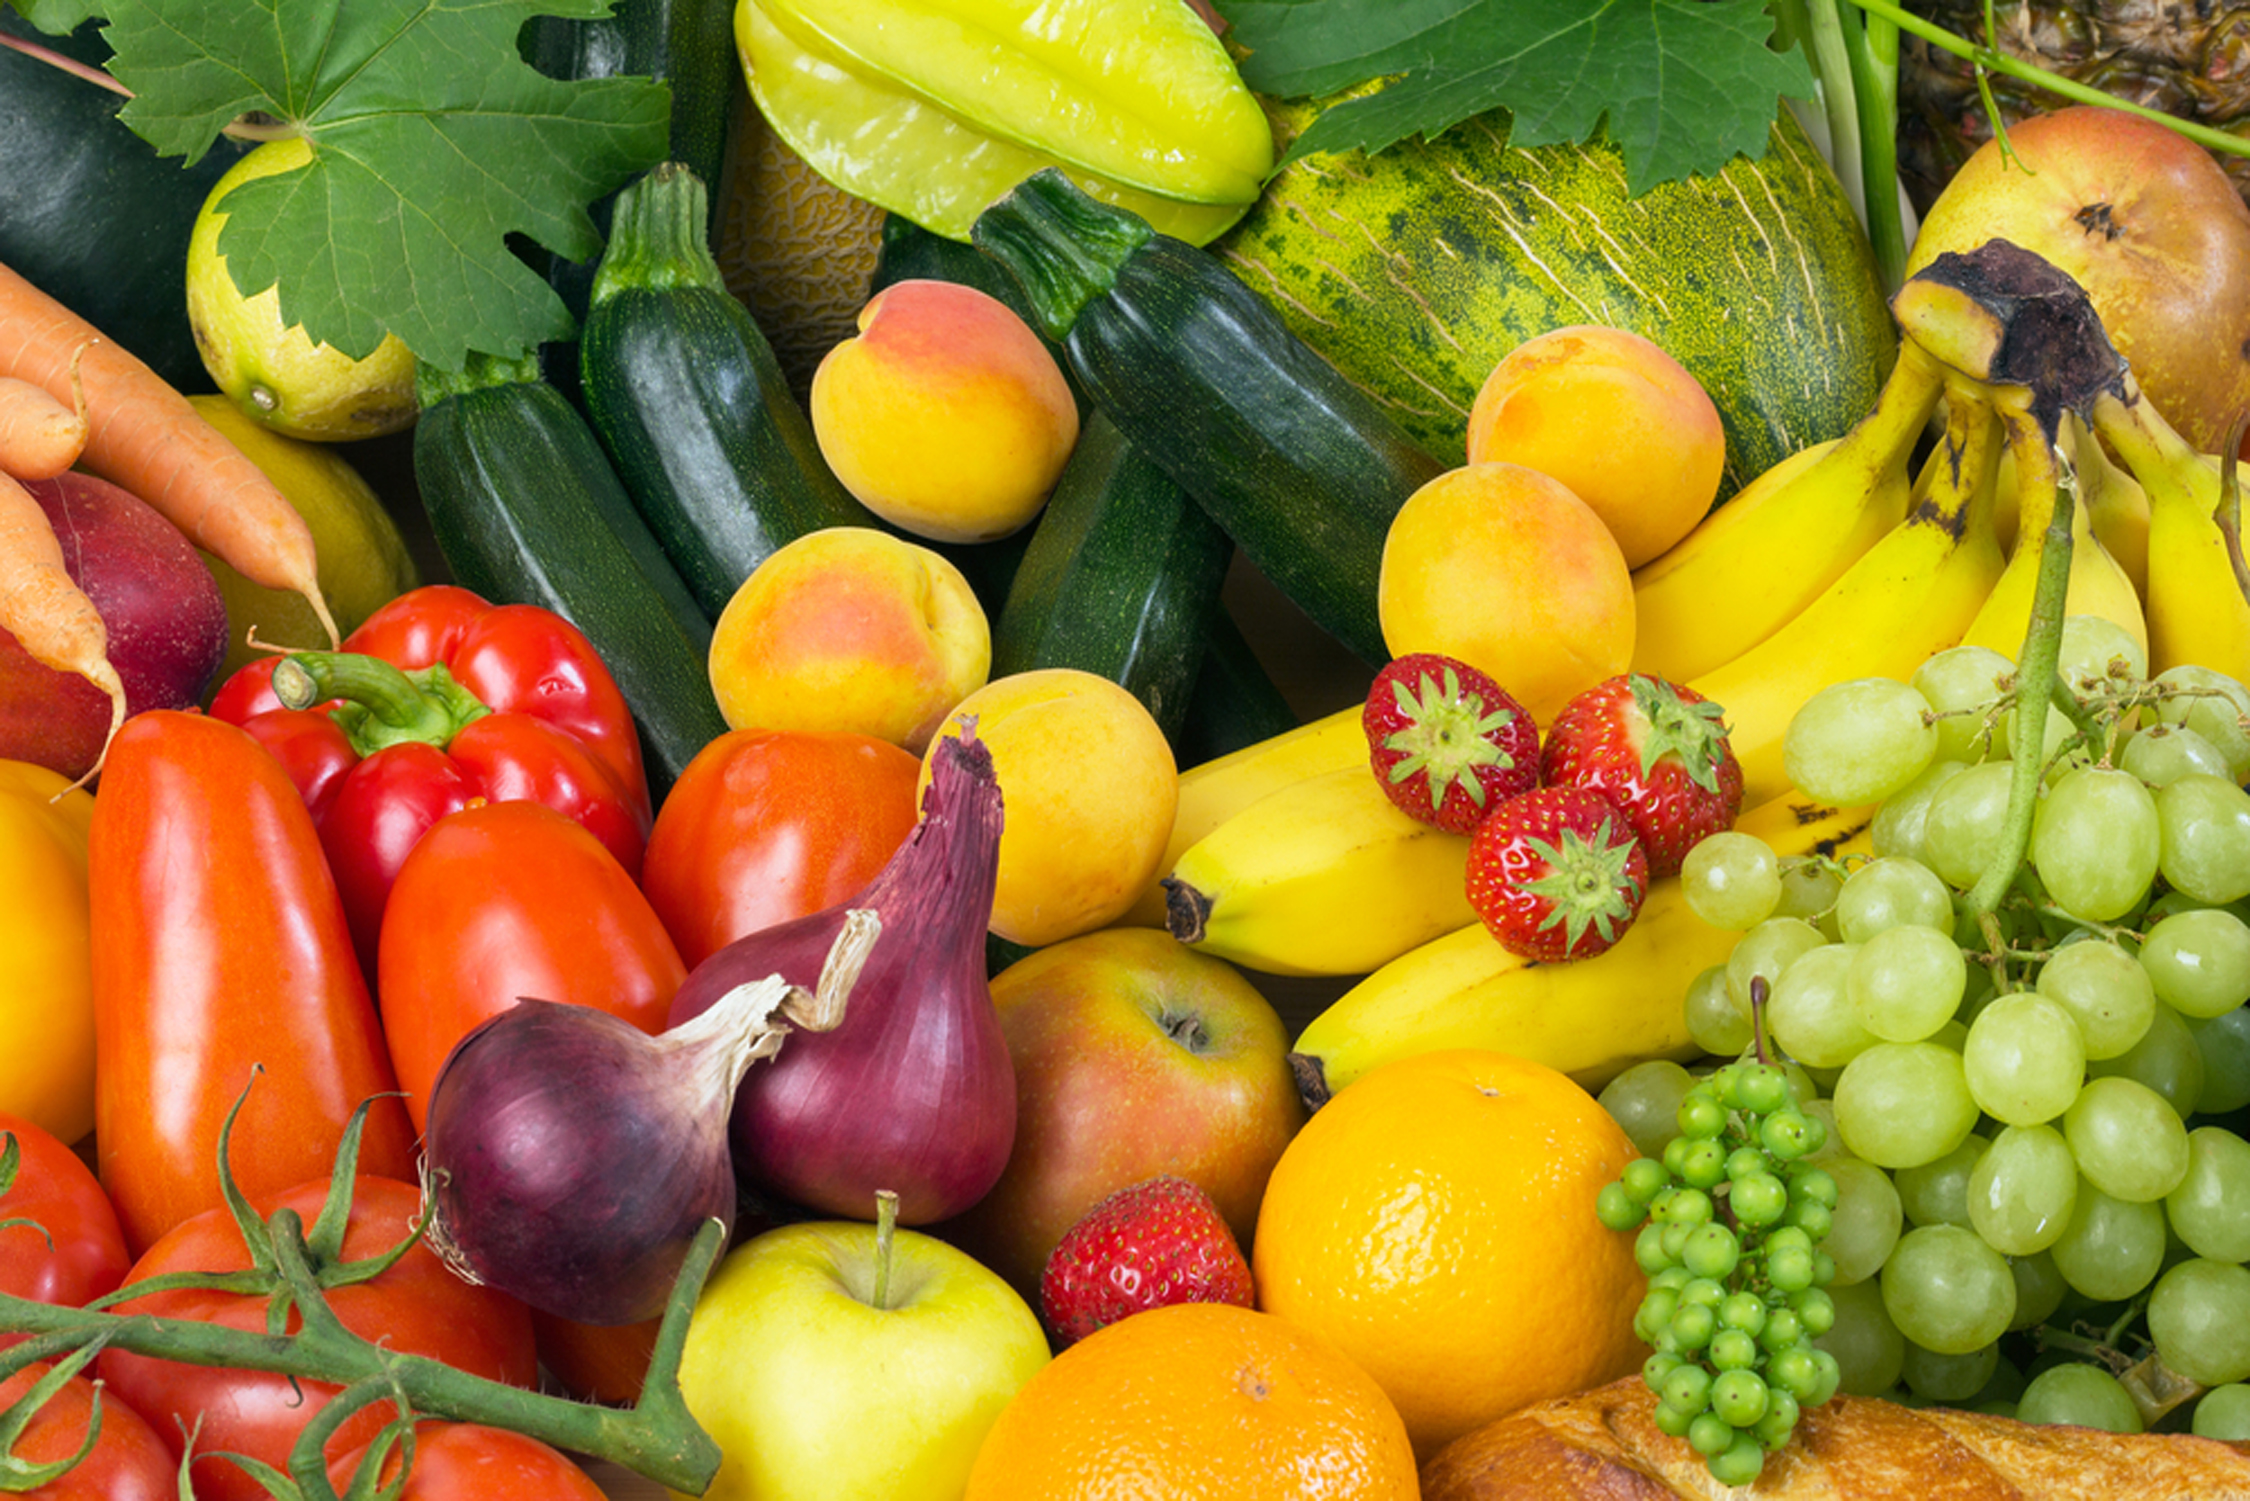 फलों और सब्जियों पर खत्म हुई केमिकल प्रयोग की जरूरत